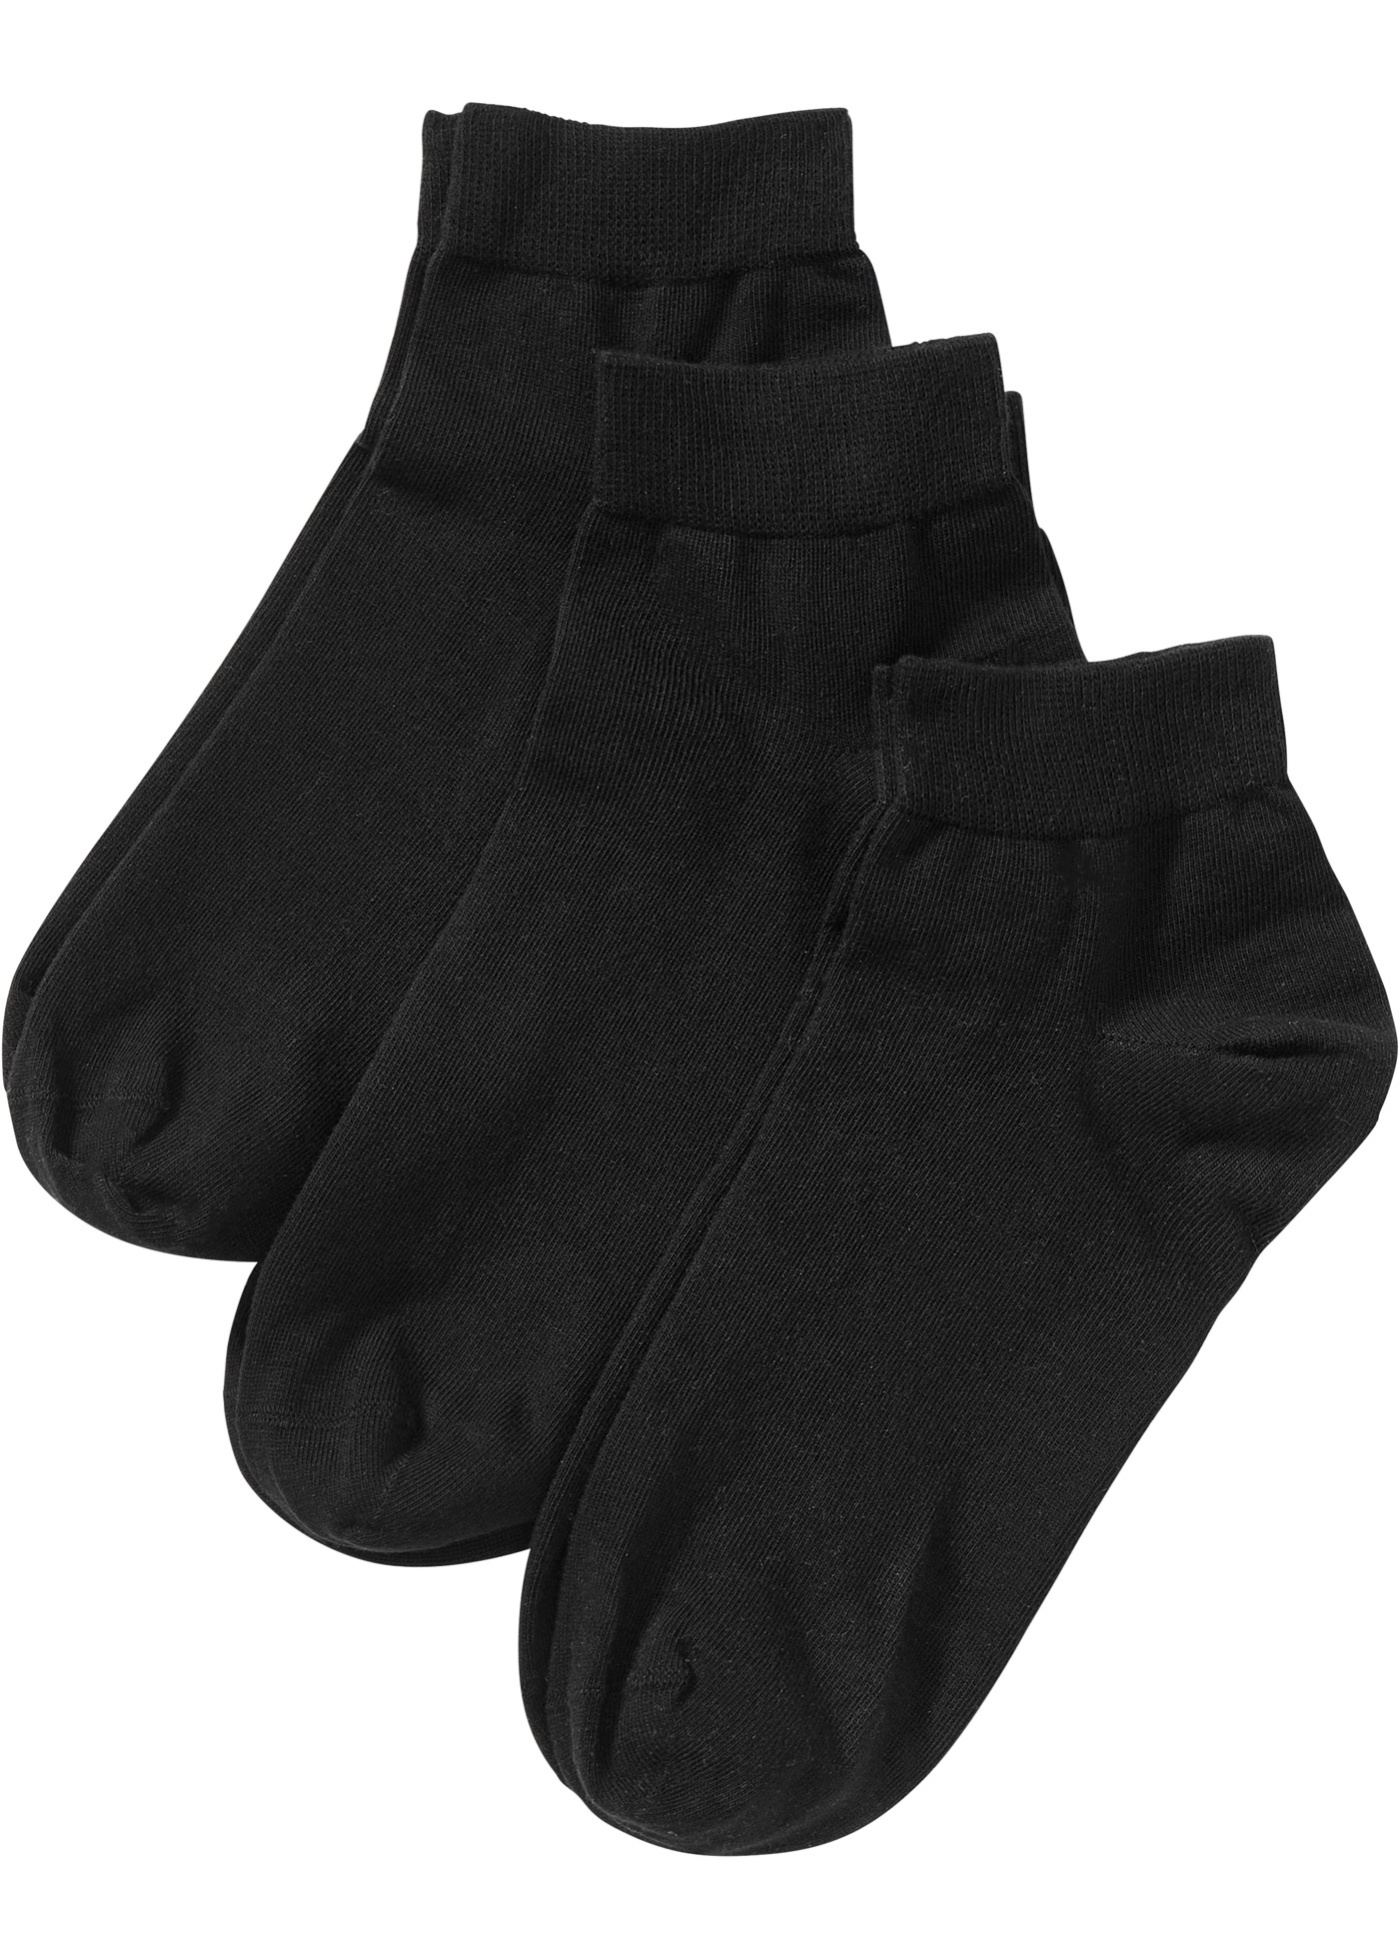 Krátke ponožky (3 ks), s exkluzívnym komfortom a bio bavlnou